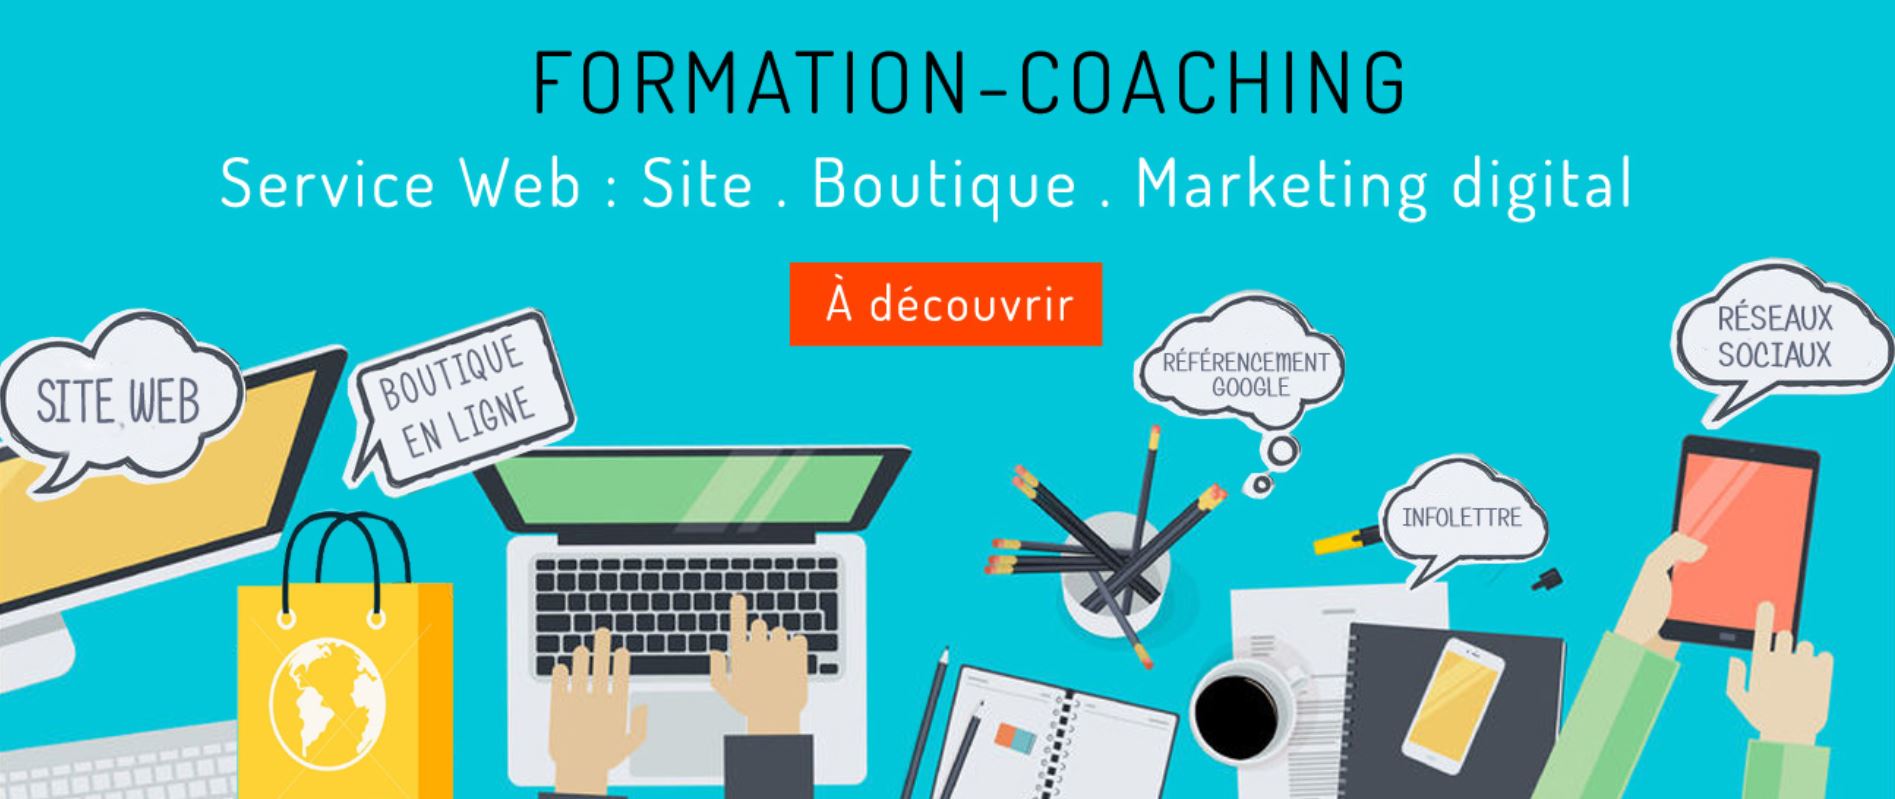 formation coaching site web, boutique en ligne et marketing digital